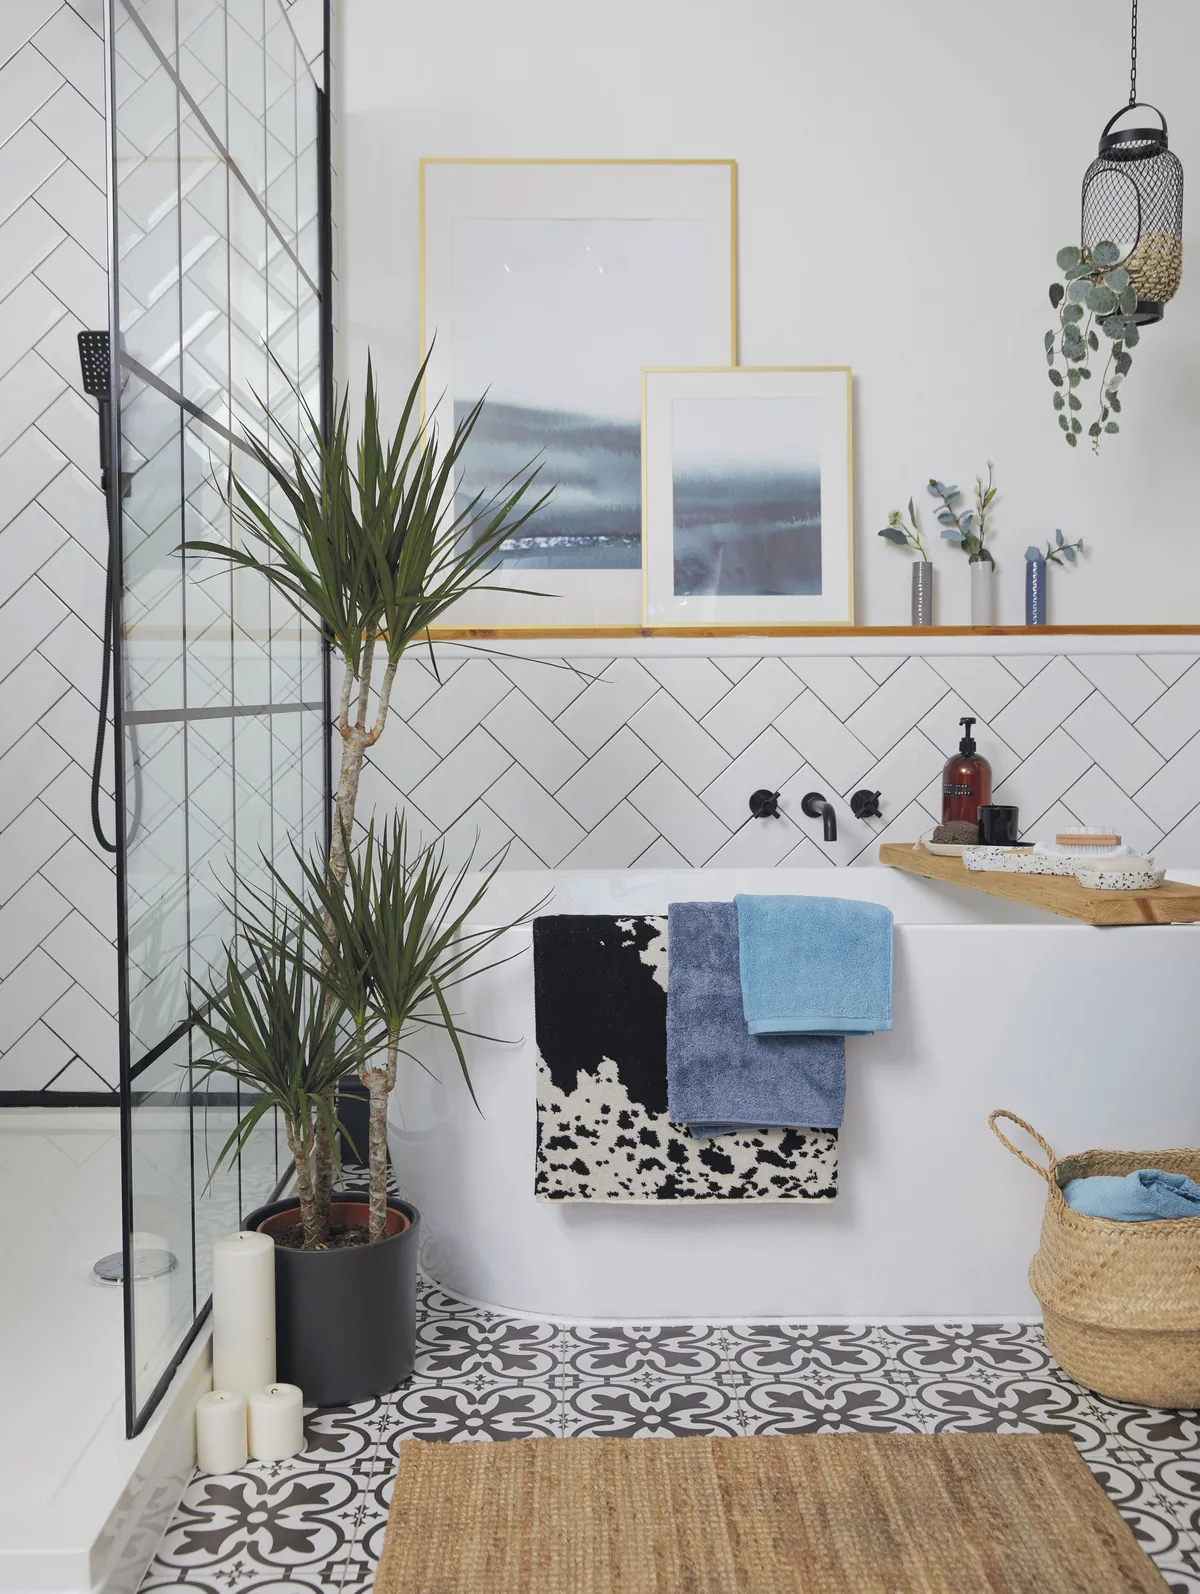 Enlli's style advice - tile the bathroom yourself